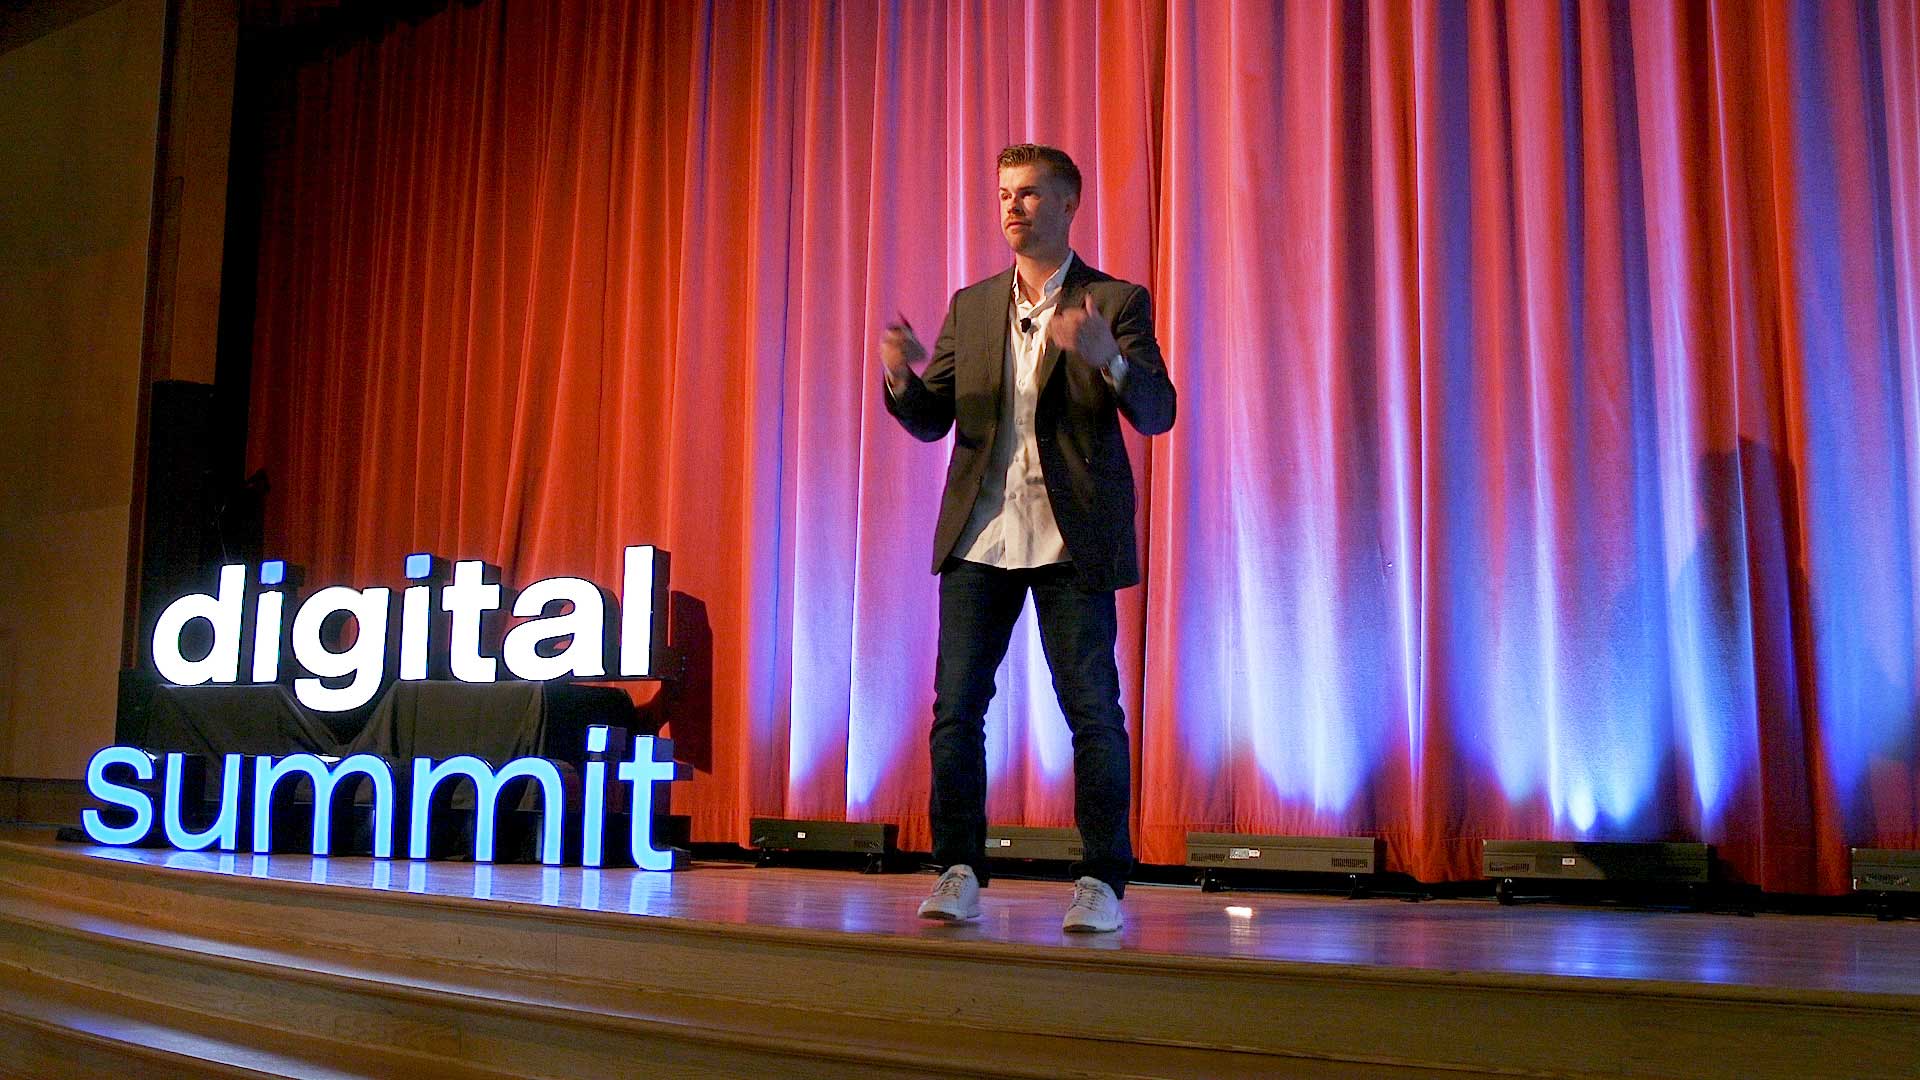 Garrett speaking at the DigitalSummit